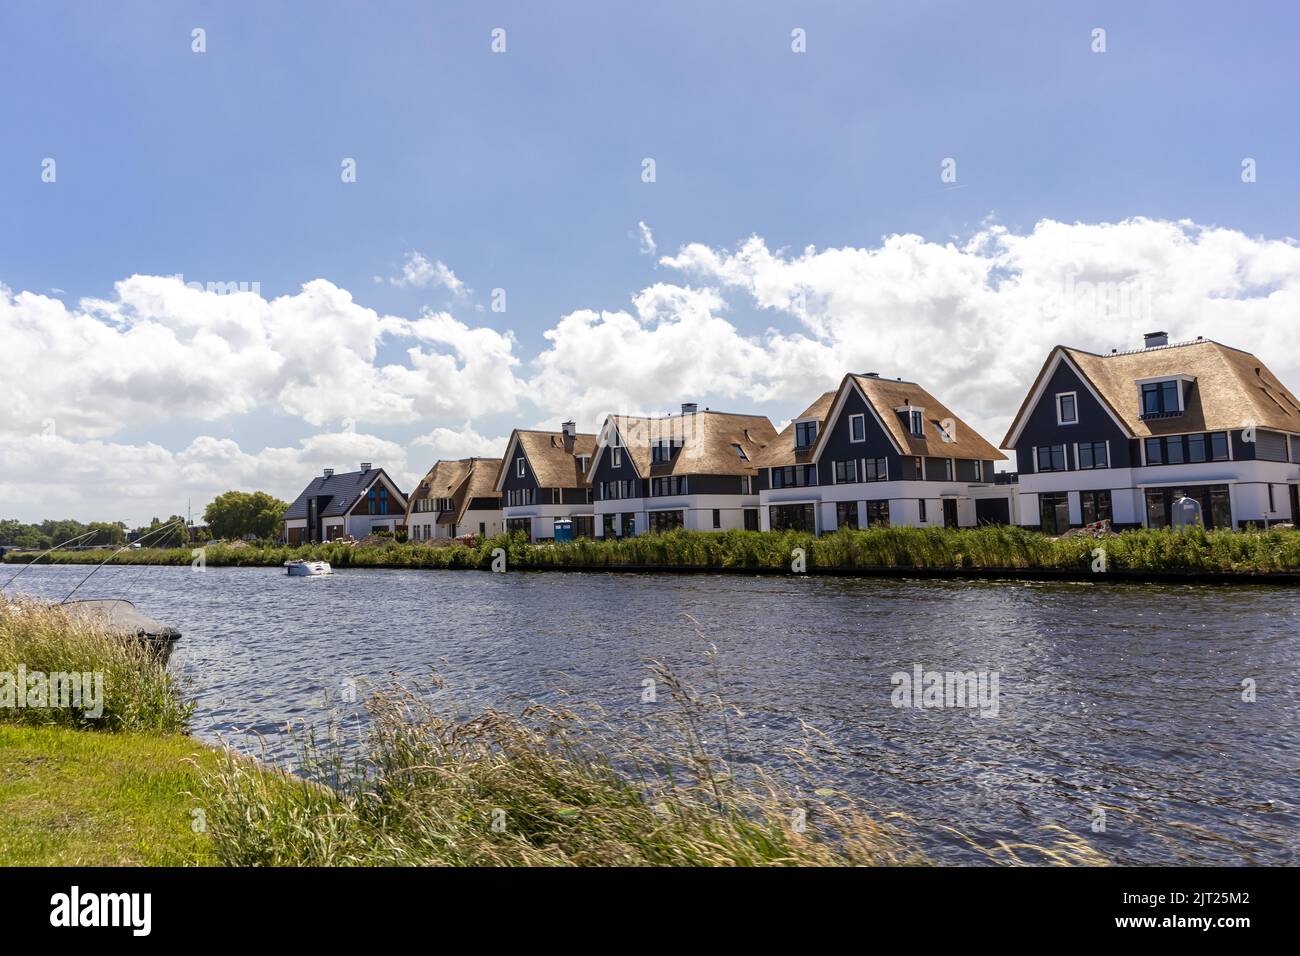 Une vue panoramique de plusieurs maisons résidentielles le long d'une rivière à Rijnsburg, aux pays-Bas Banque D'Images